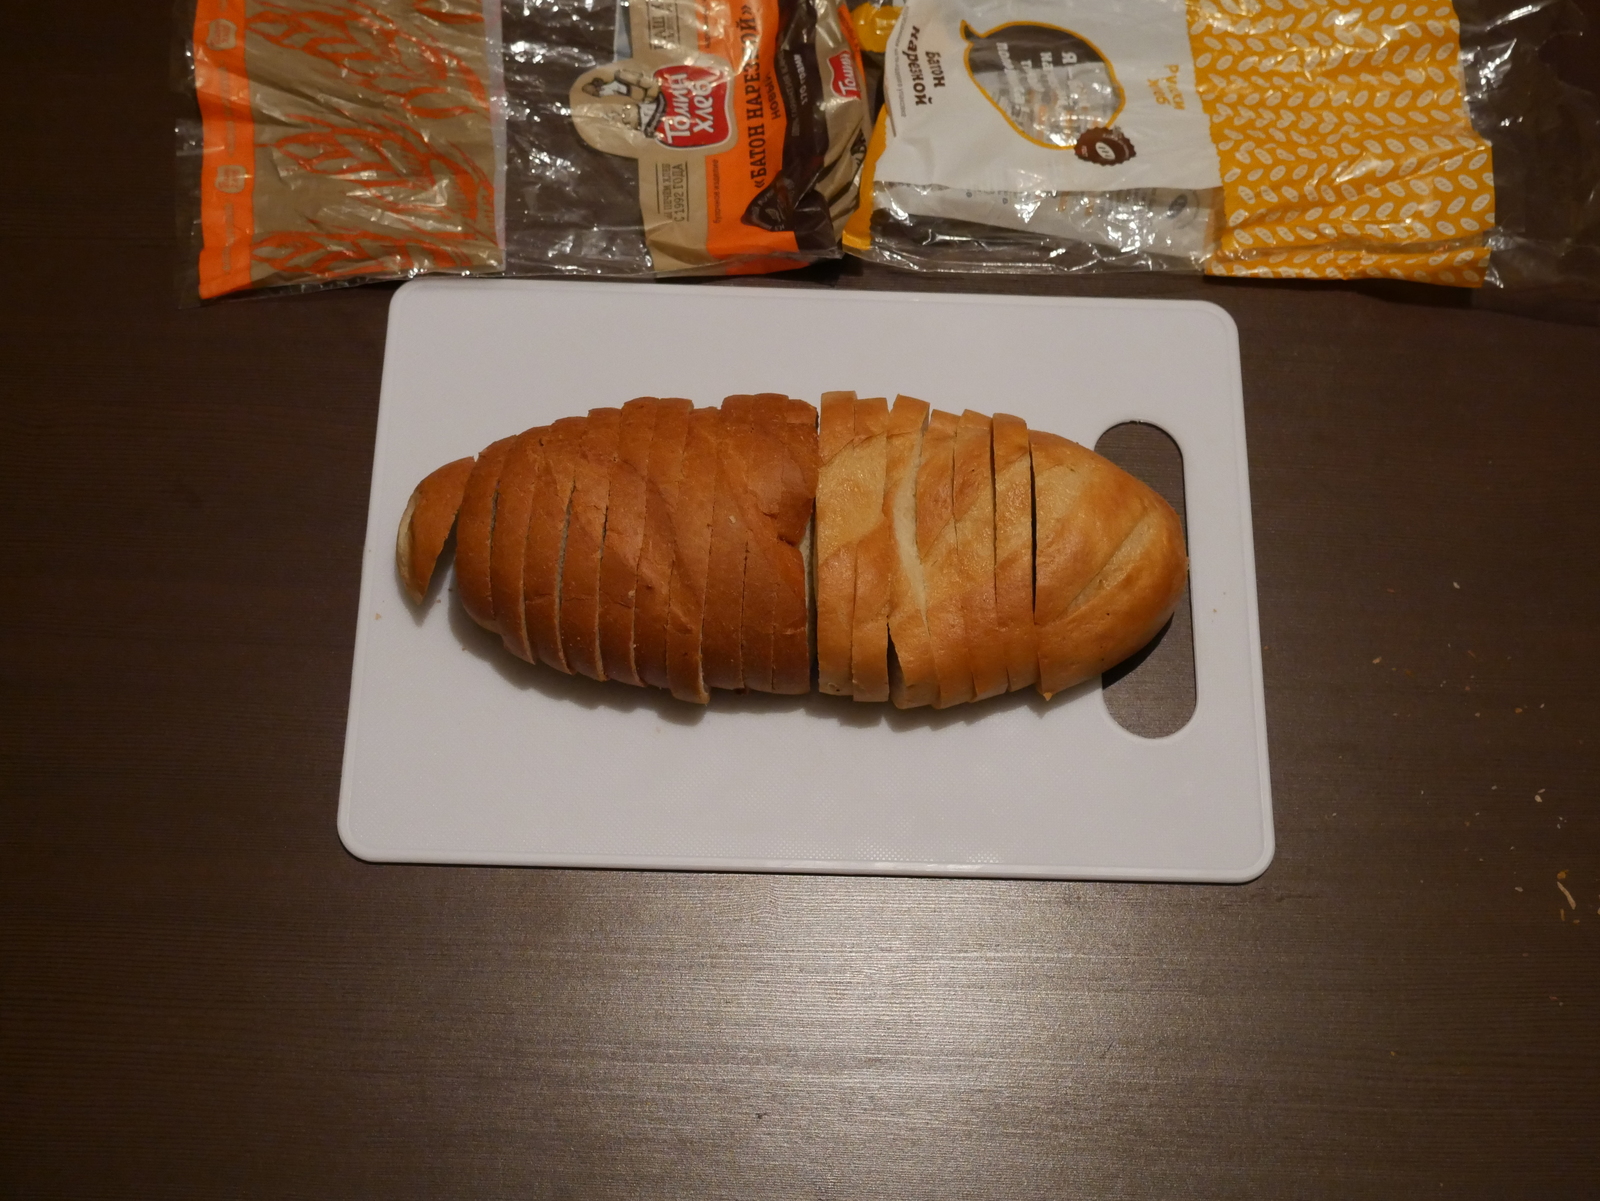 Middle bread, size matters - My, Bread, Baton, , , Longpost